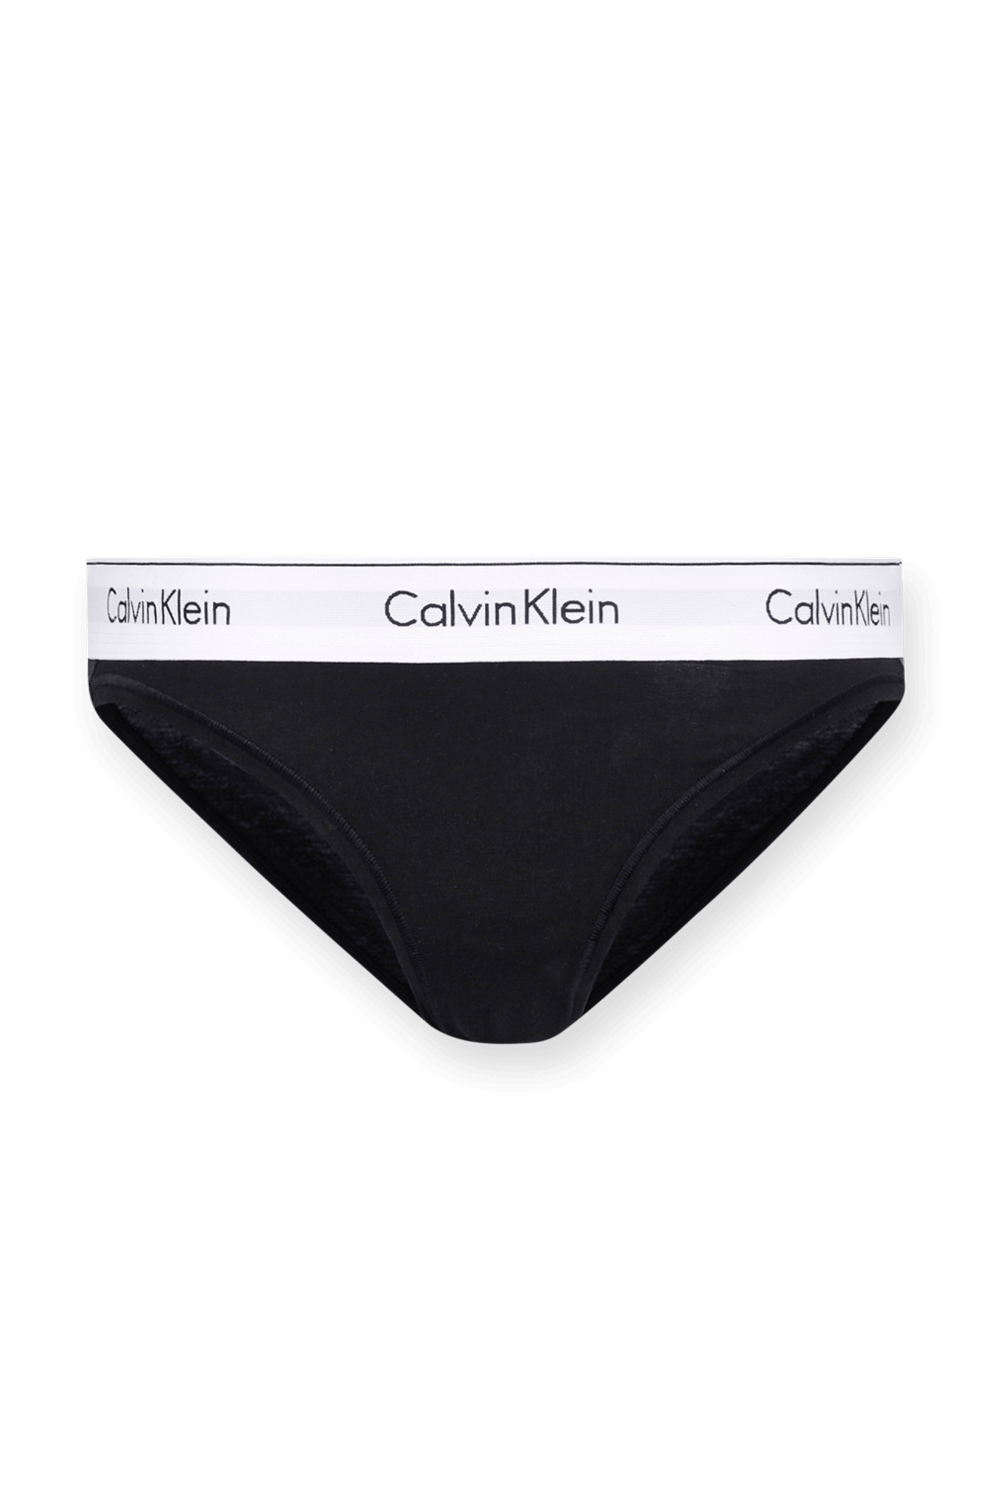 תחתוני לוגו שחורים CALVIN KLEIN